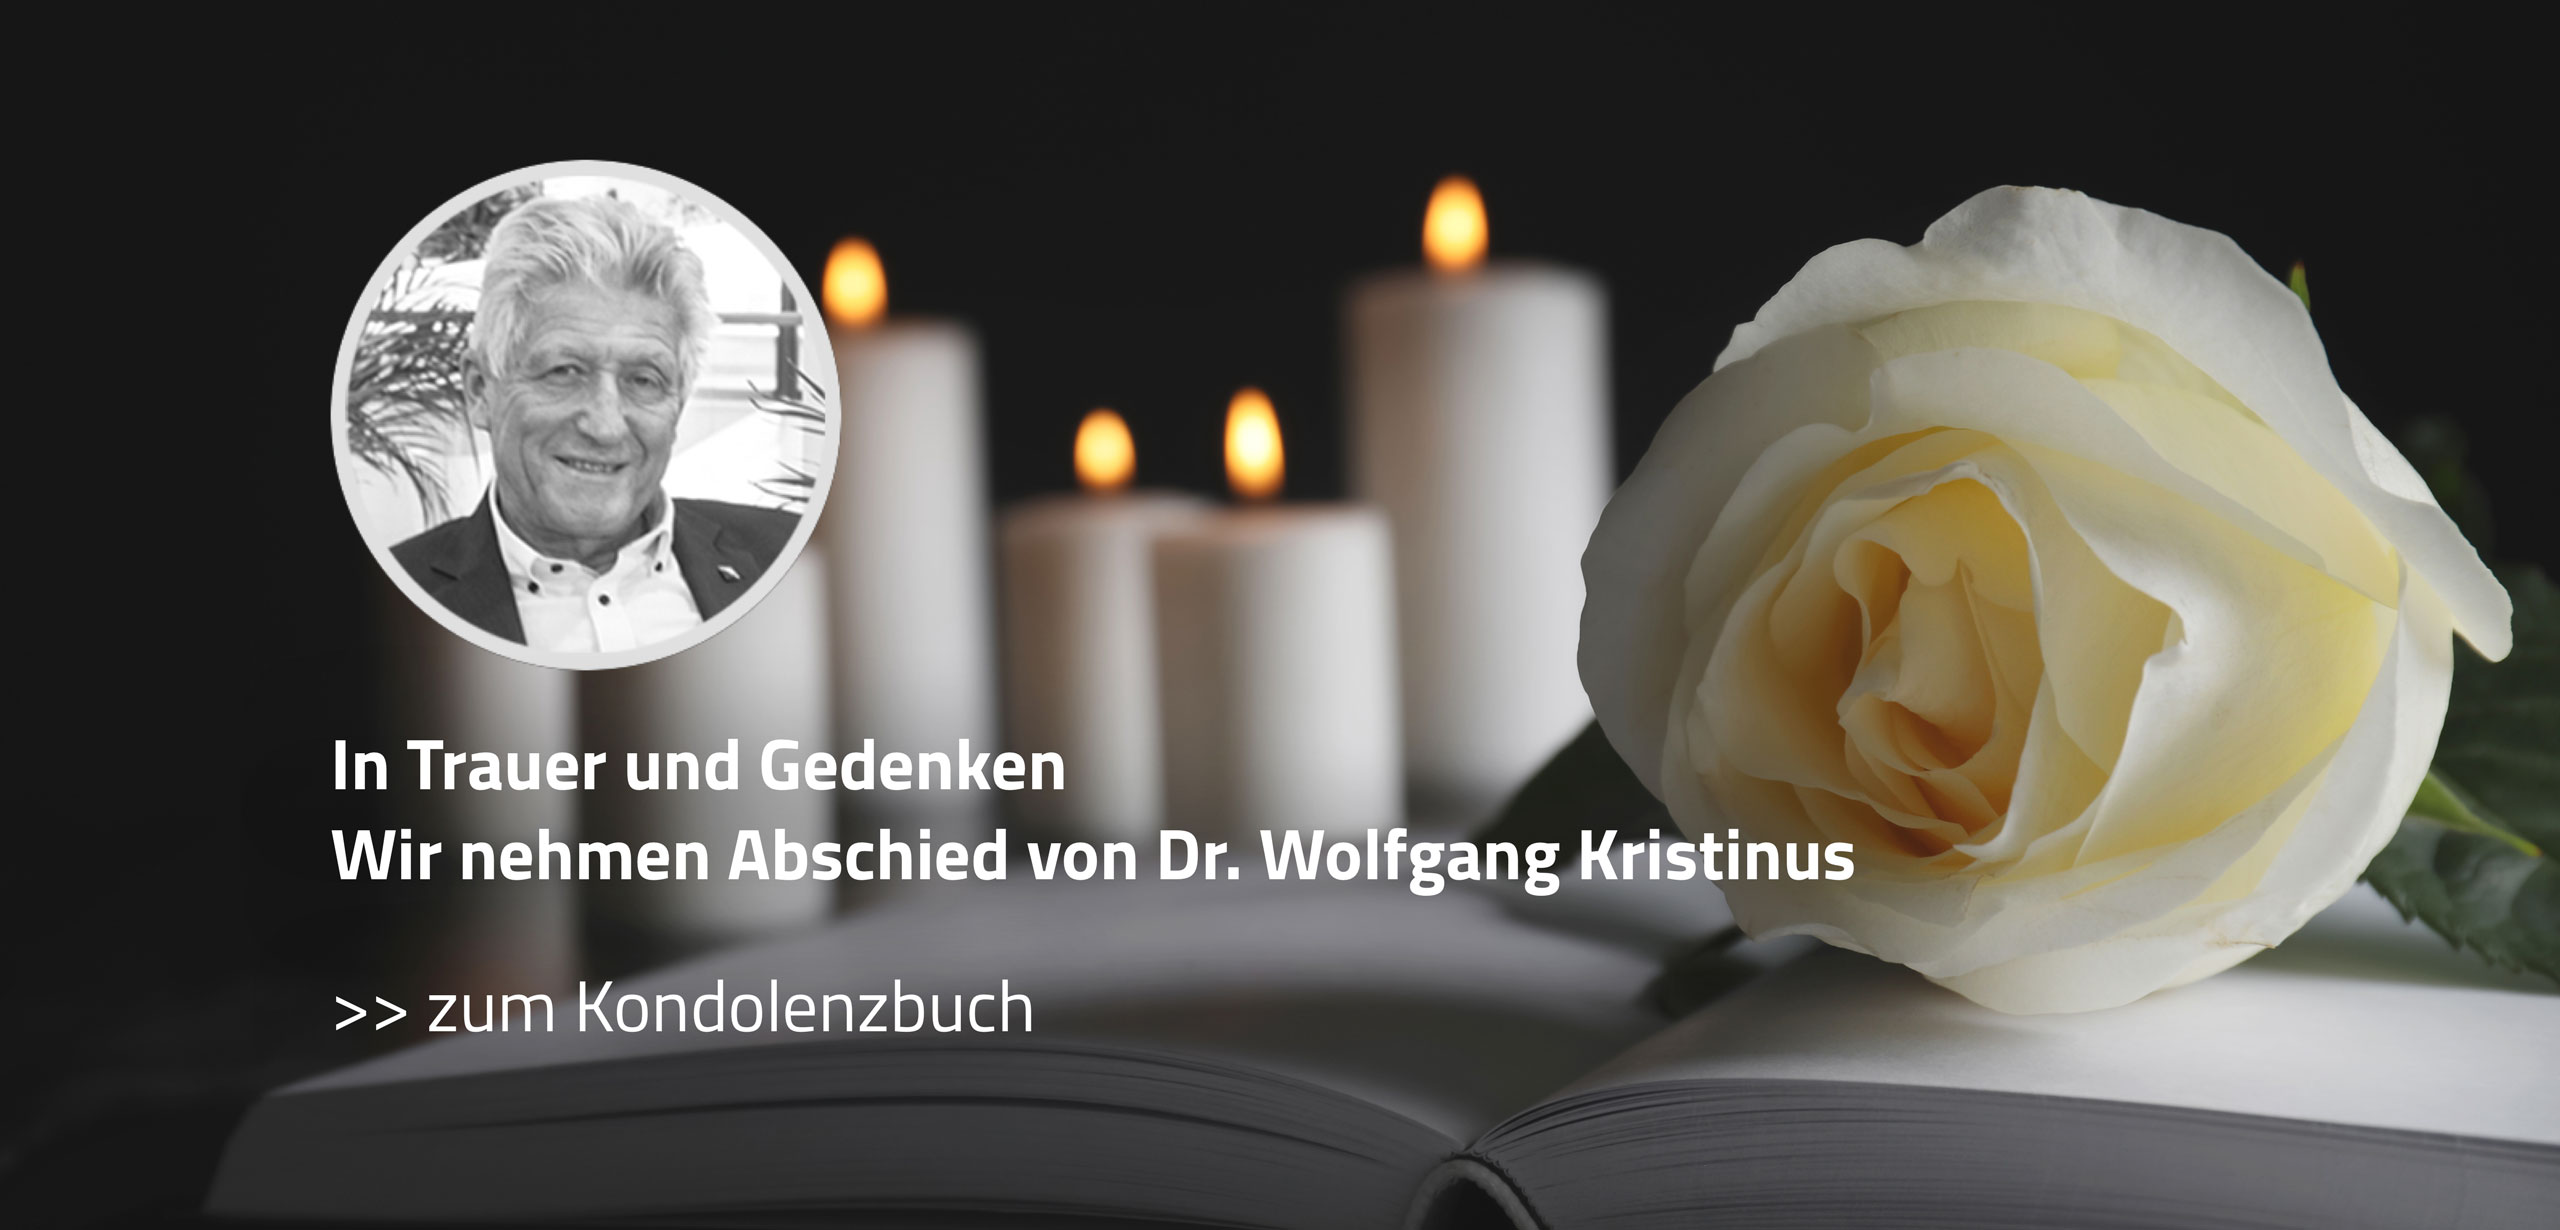 In Trauer und Gedenken | Kondolenzbuch | B+M HolzWelt